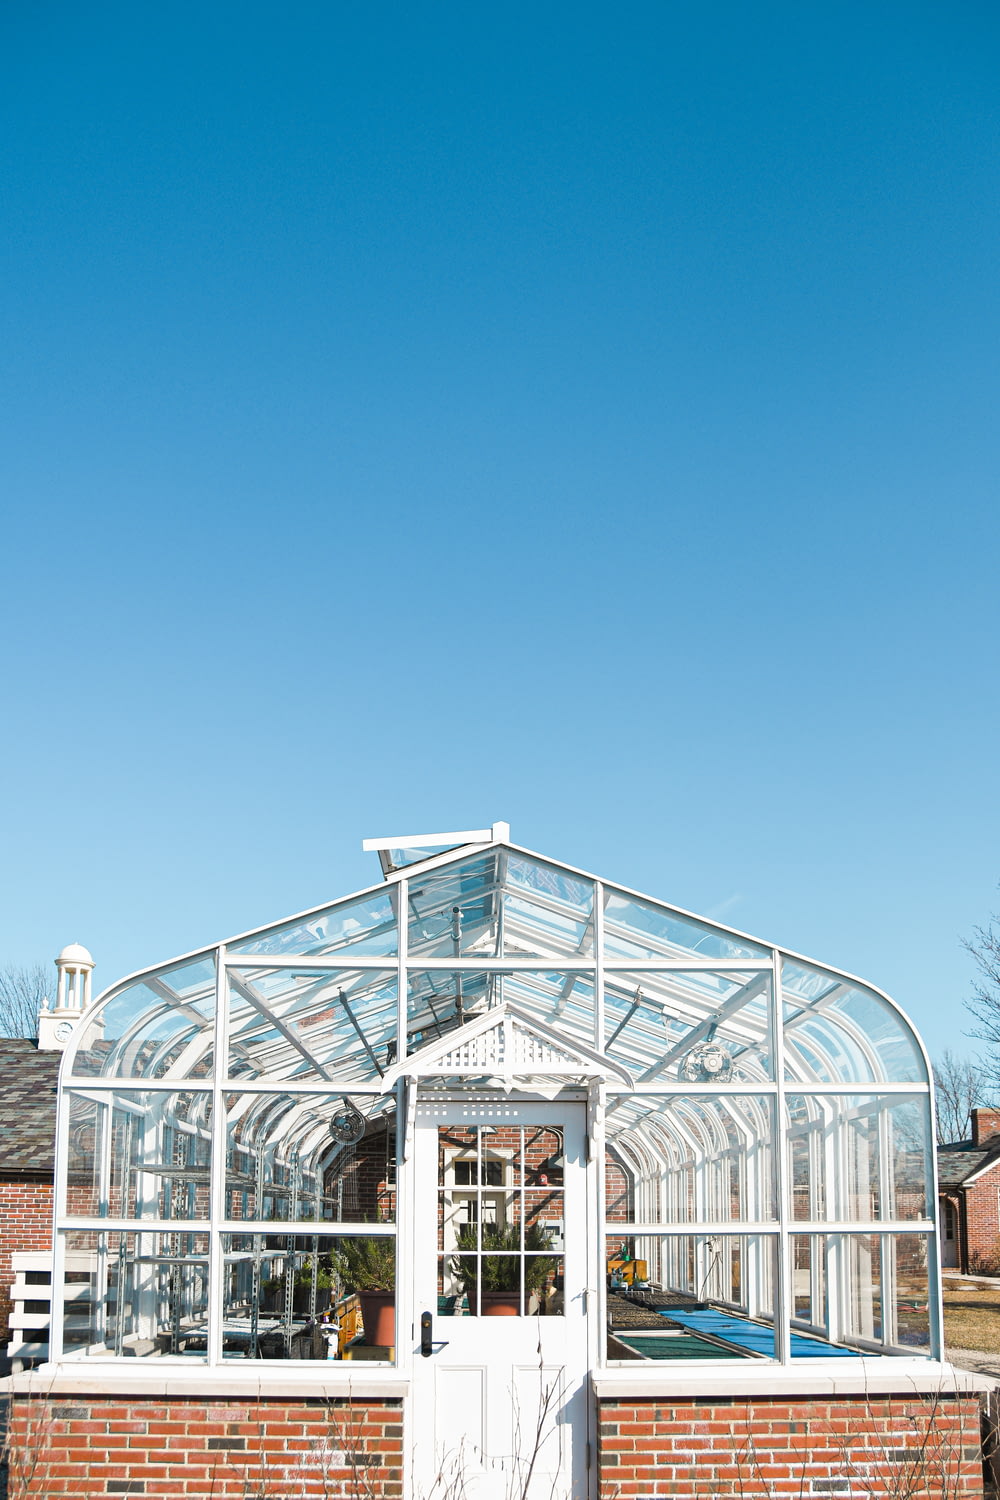 Edificio de vidrio con marco de metal blanco bajo el cielo azul durante el día